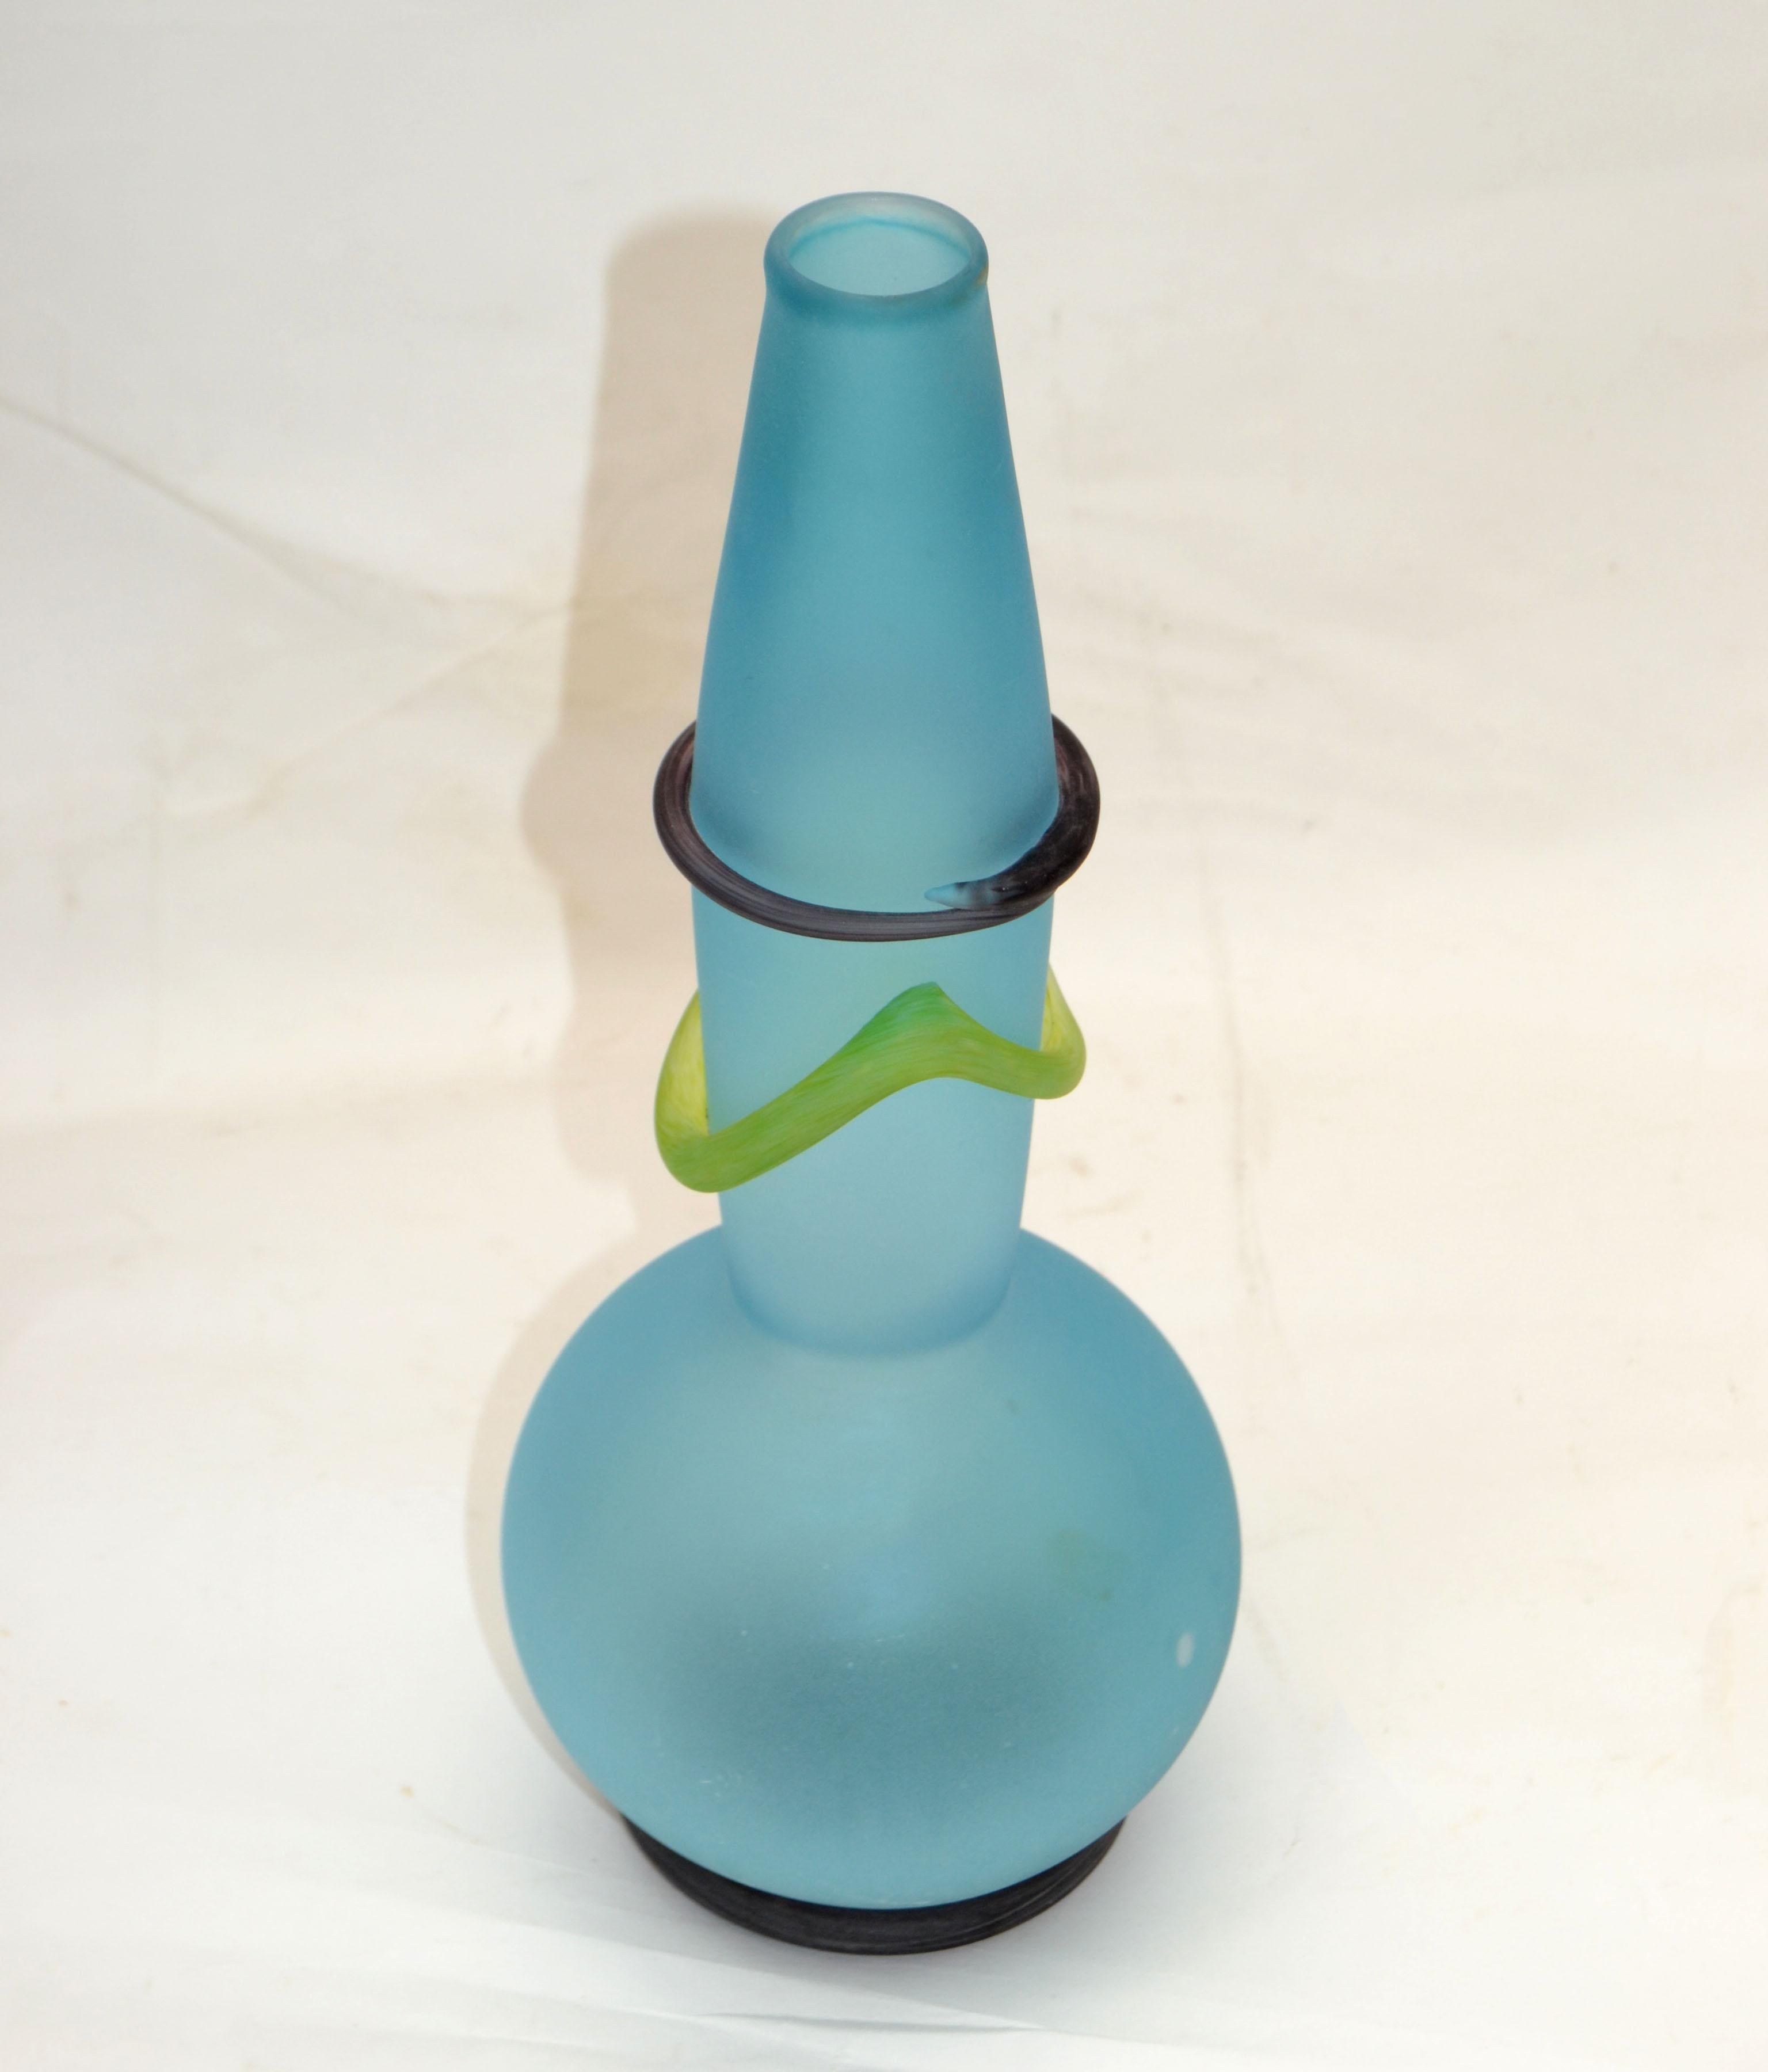 Vase en verre d'art soufflé Studio Paran en verre bleu turquoise et jaune d'Amérique.
L'ouverture de 1,5 pouces de diamètre est destinée à recevoir un petit bouquet.
L'art du verre unique Mid-Century Modern très élégant et pratique.